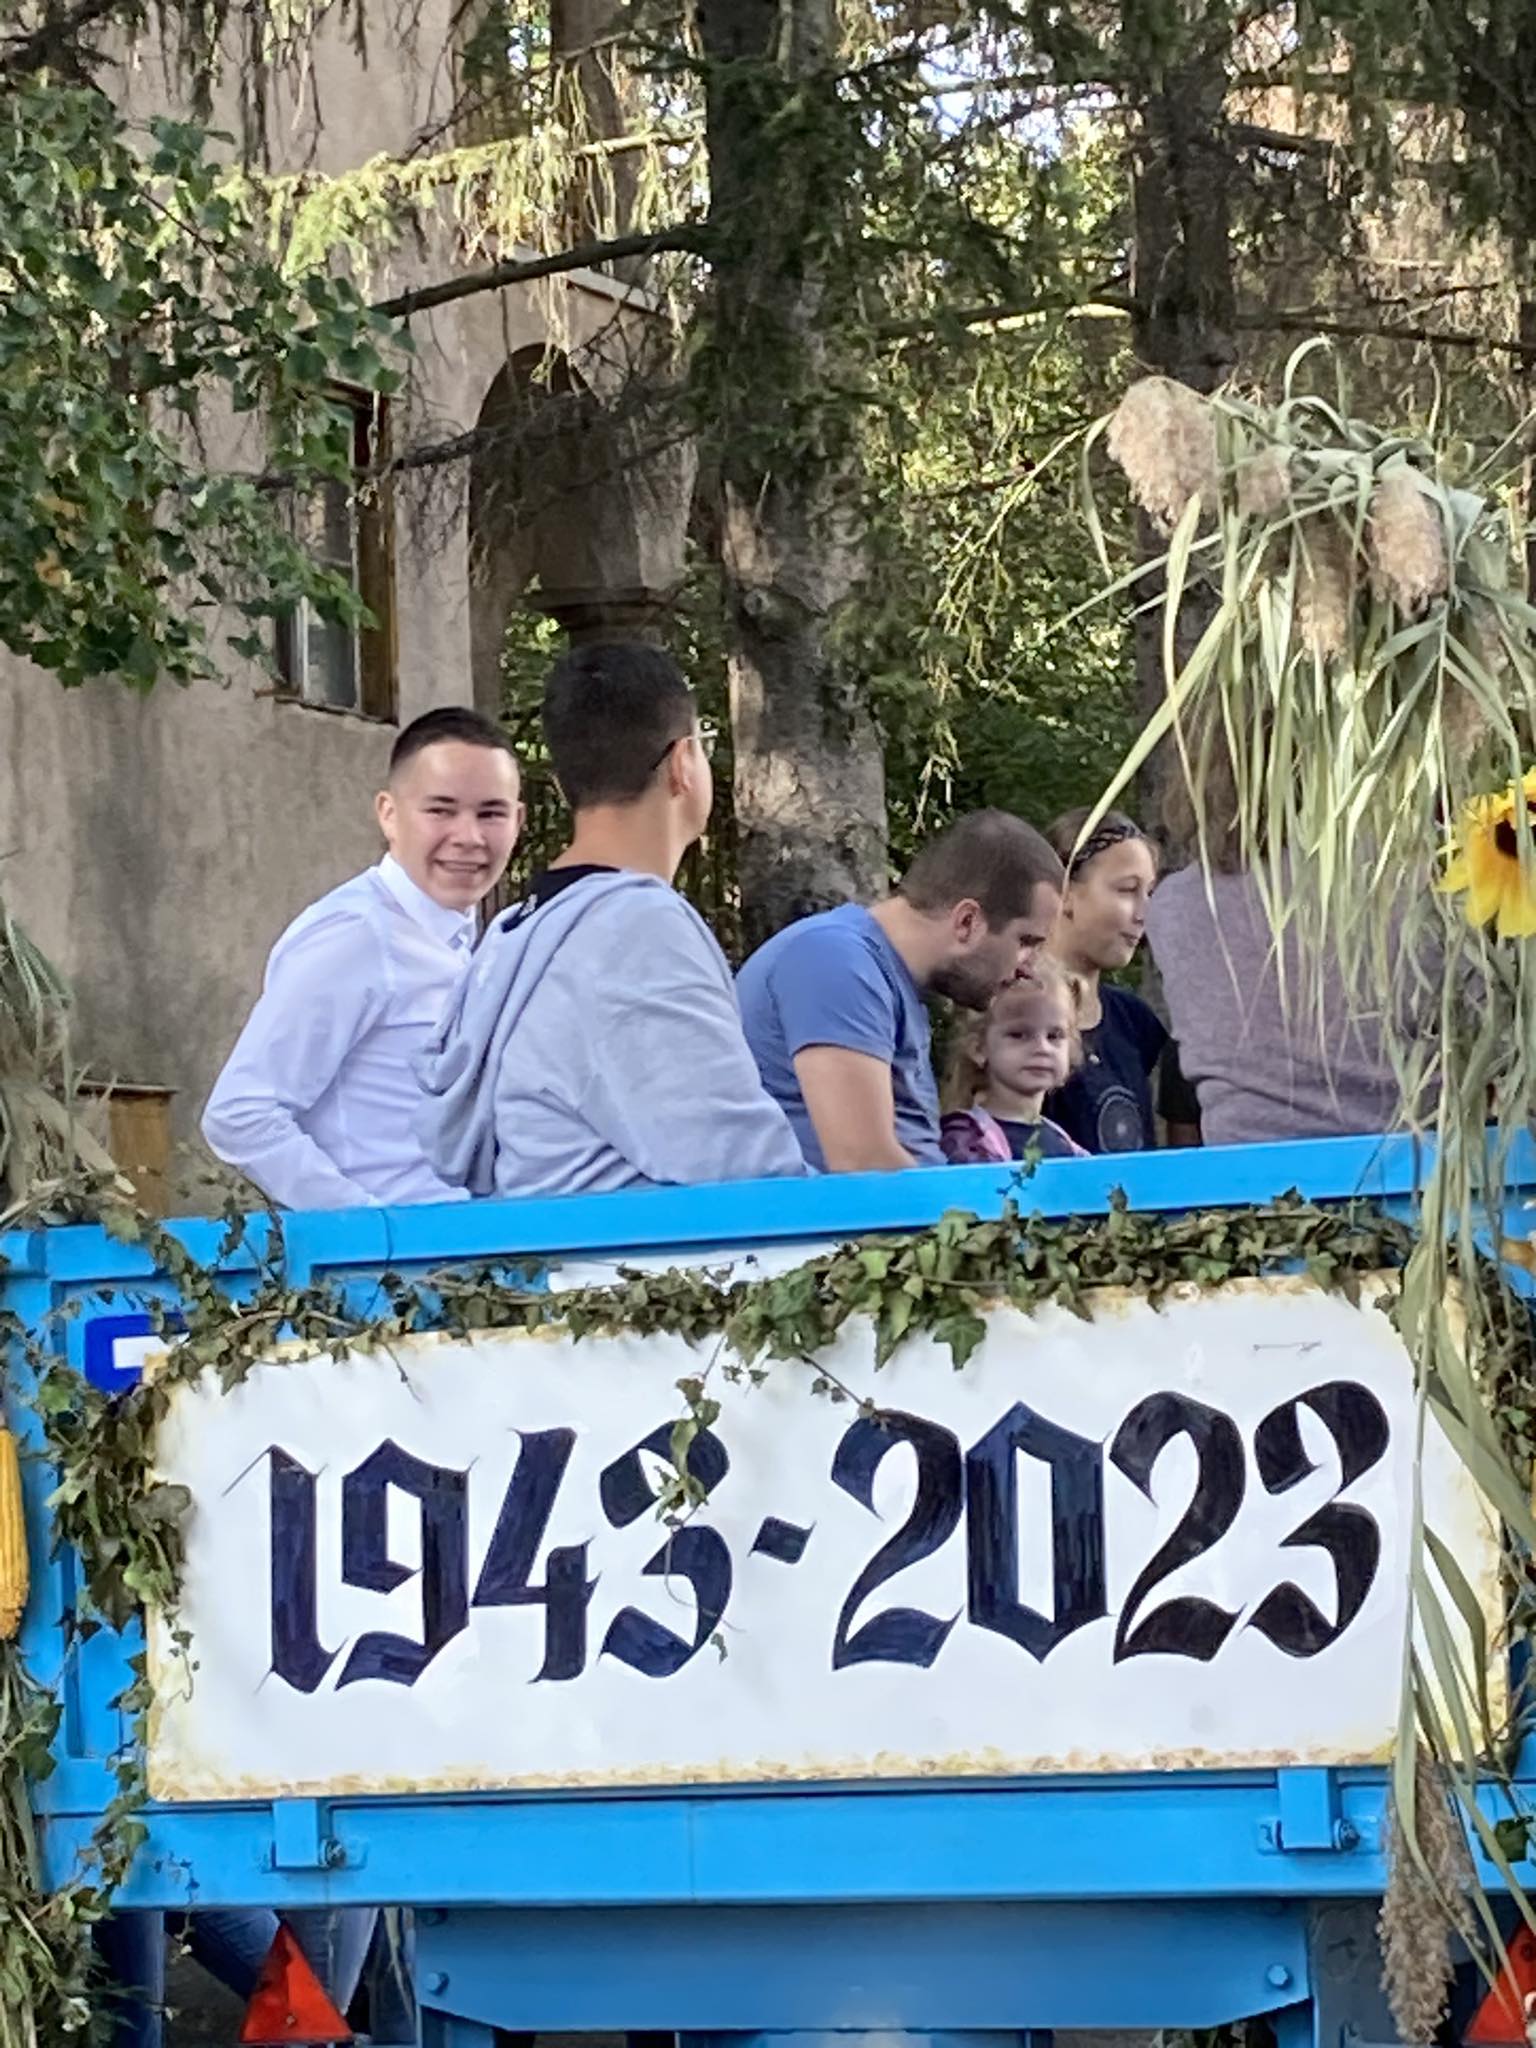 Egy csoport ember ül egy kék, díszített úszón, amelyet lombozat és egy „1943-2023” feliratú tábla díszít. Az úszó a szabadban van, fákkal és egy épülettel a háttérben. Vannak, akik mosolyogva néznek a kamerába, míg mások más-más irányba néznek.